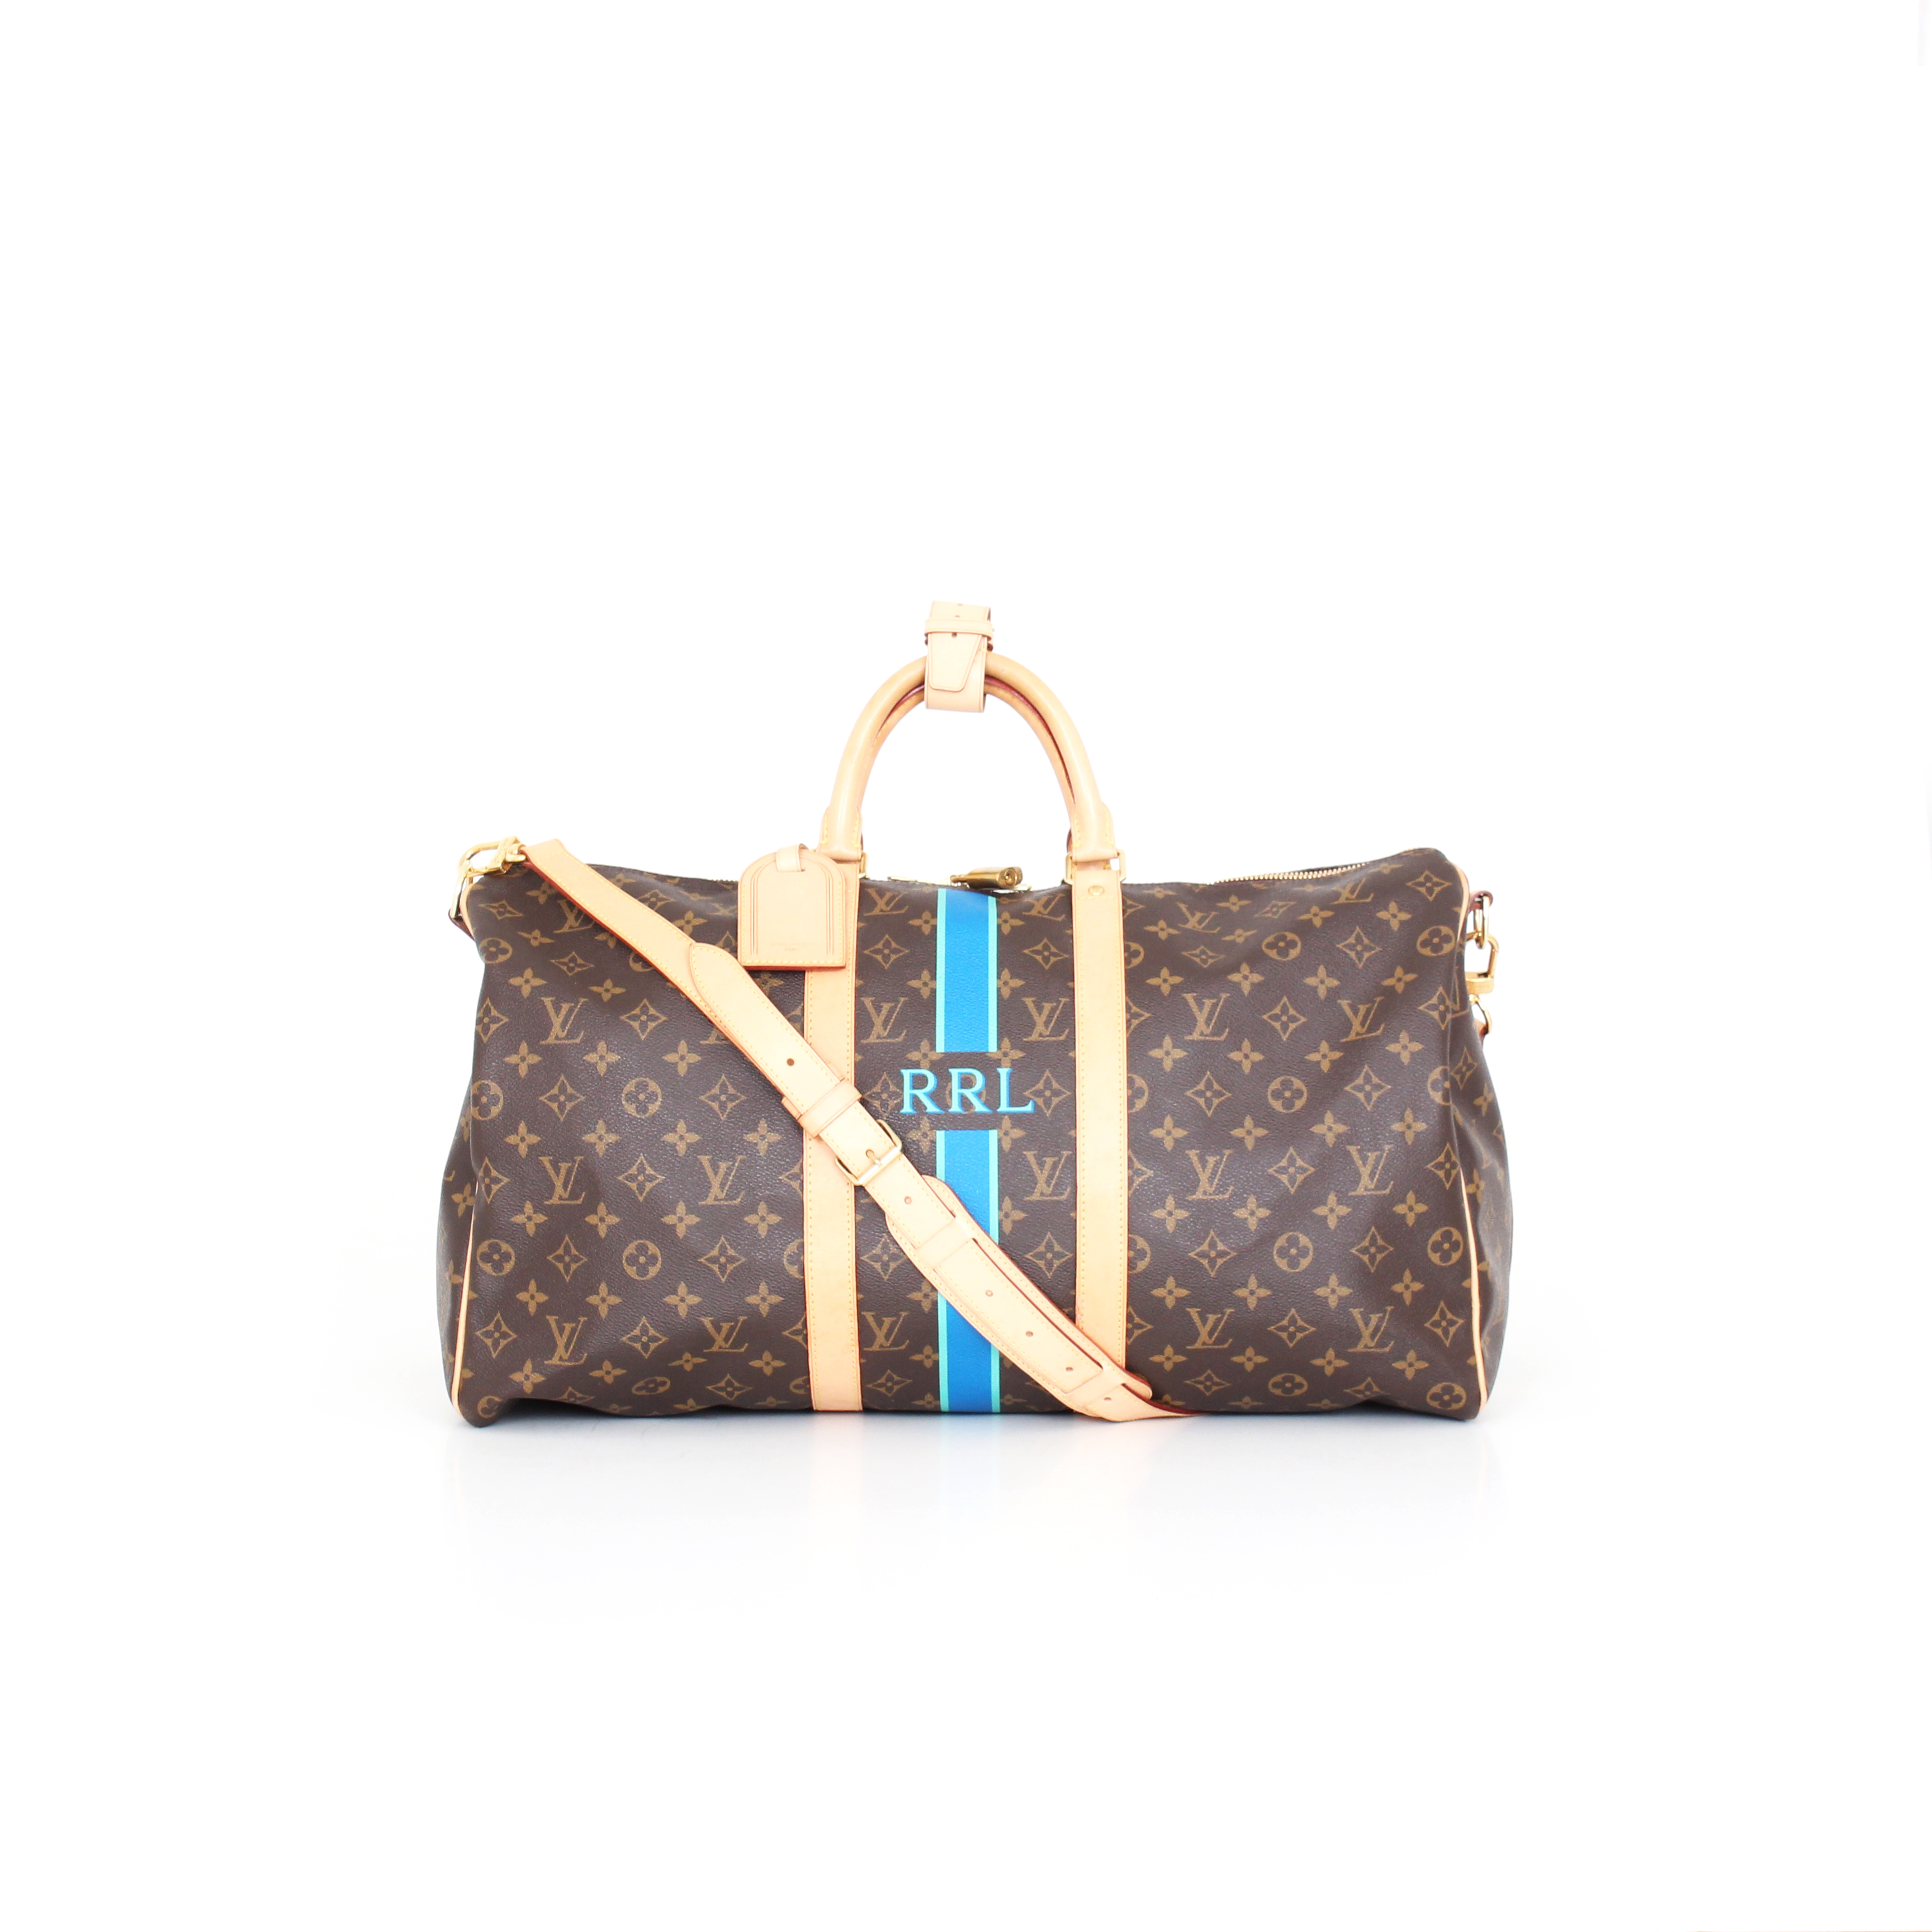 Comprar bolsos de lujo | Bolso Louis Vuitton 50 | CBL Bags